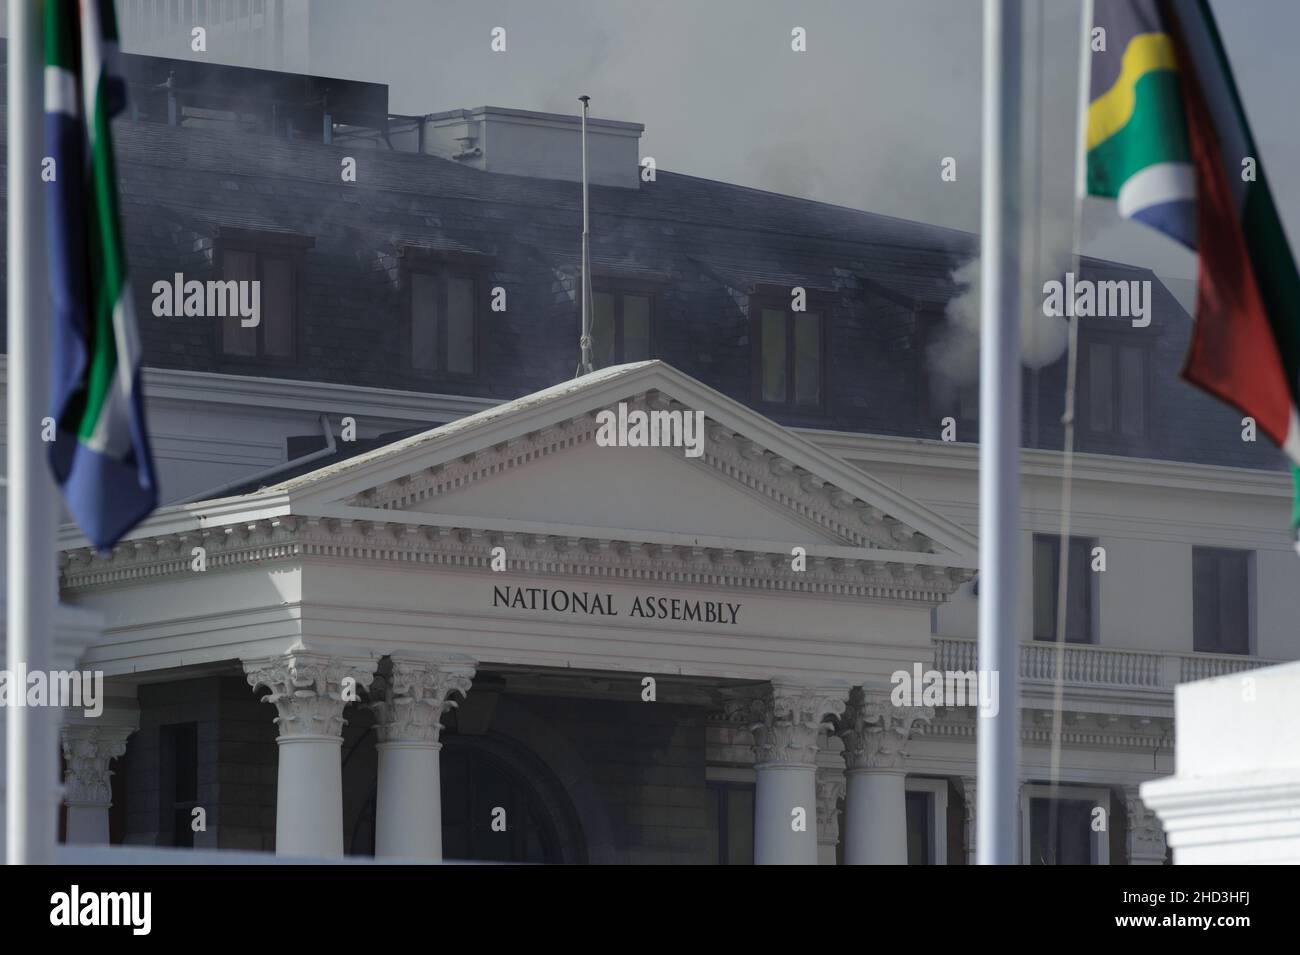 Südafrikas nationales parlament schwelte nach einem Brand in den frühen Morgenstunden des 2. Januar 2022 im Zentrum von Kapstadt Stockfoto